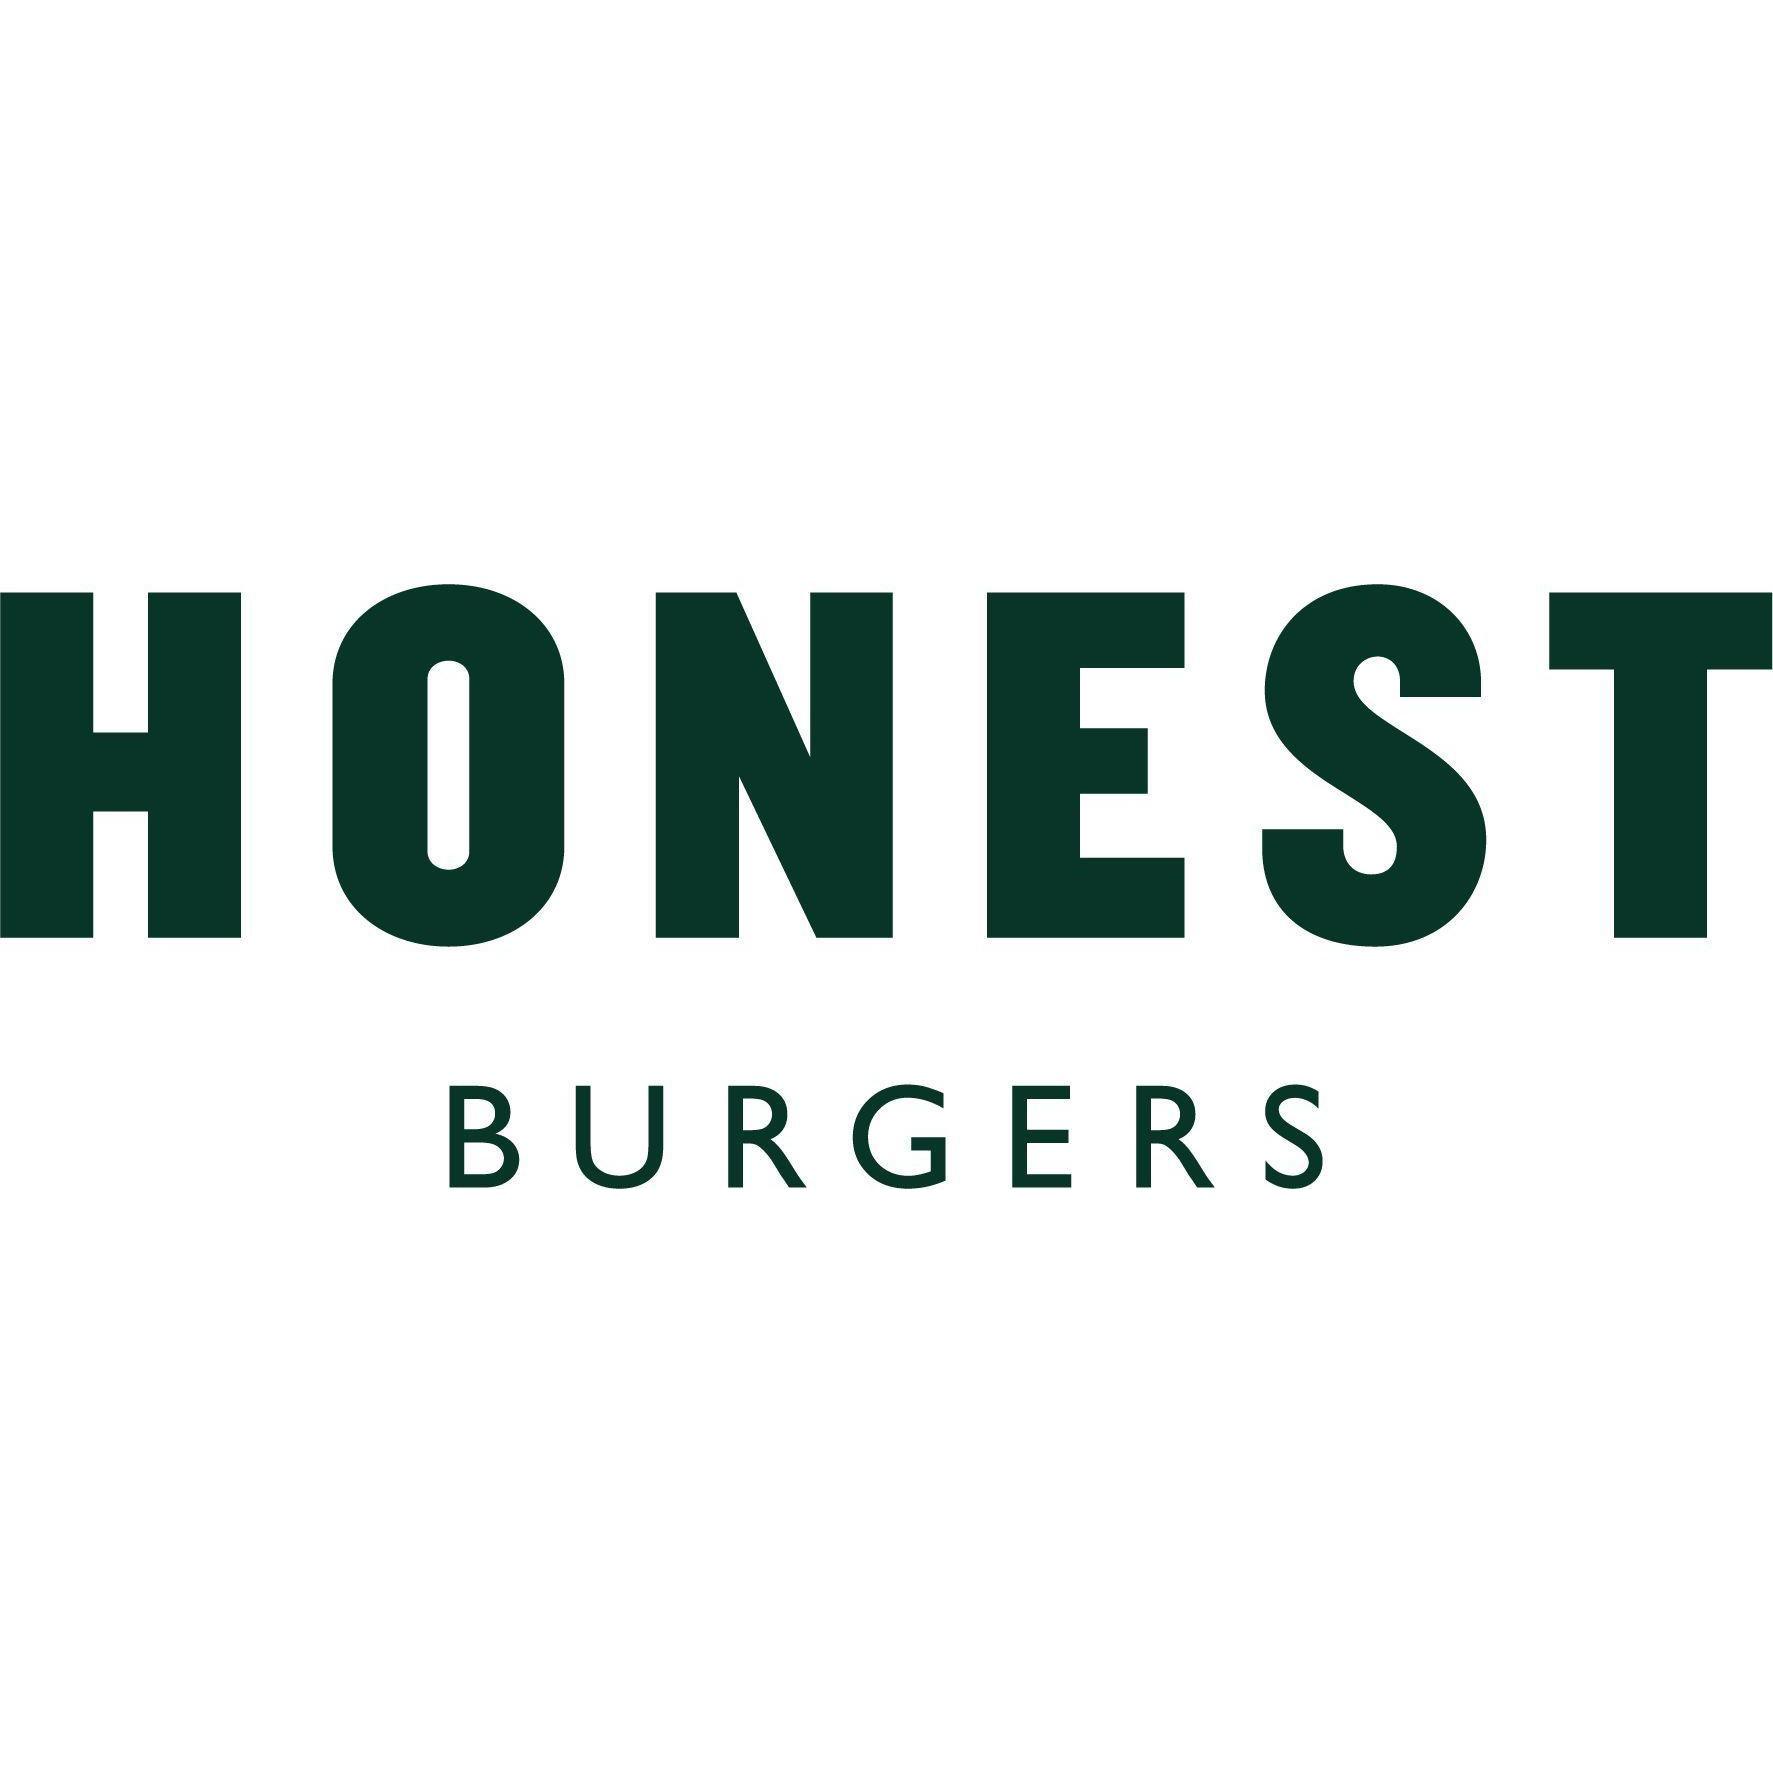 Honest Burgers Bristol - Bristol, Bristol BS1 1XA - 01174 727360 | ShowMeLocal.com